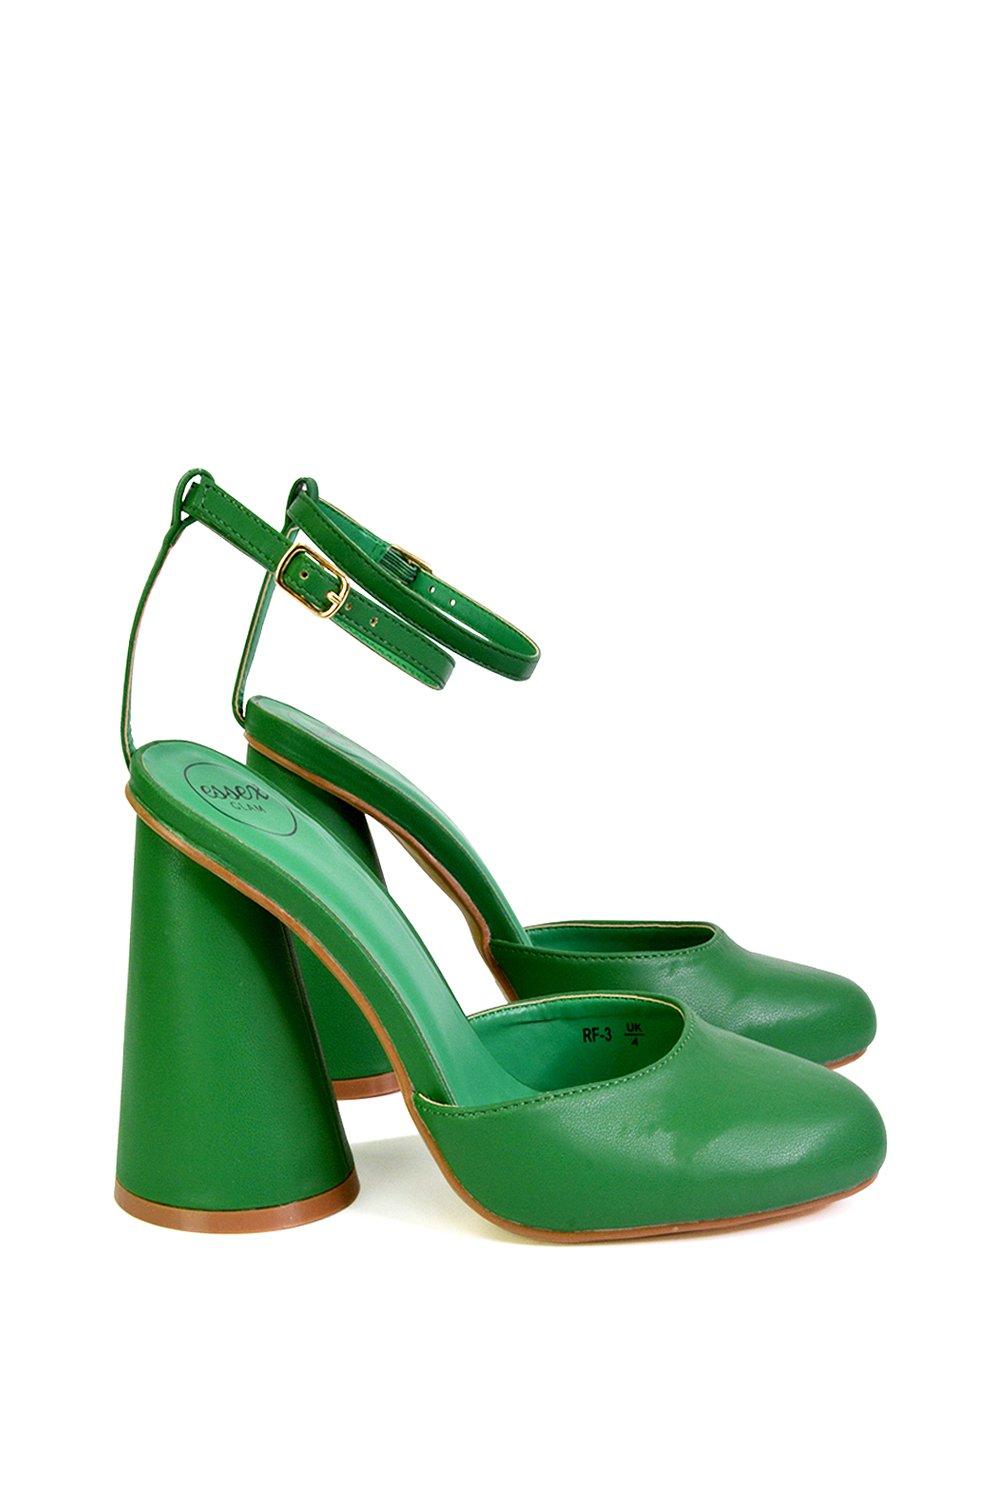 Эффектный каблук с блоком цилиндров и ремешком на щиколотке Ekin XY London, зеленый туфли на каблуках rosalia mule frye камень